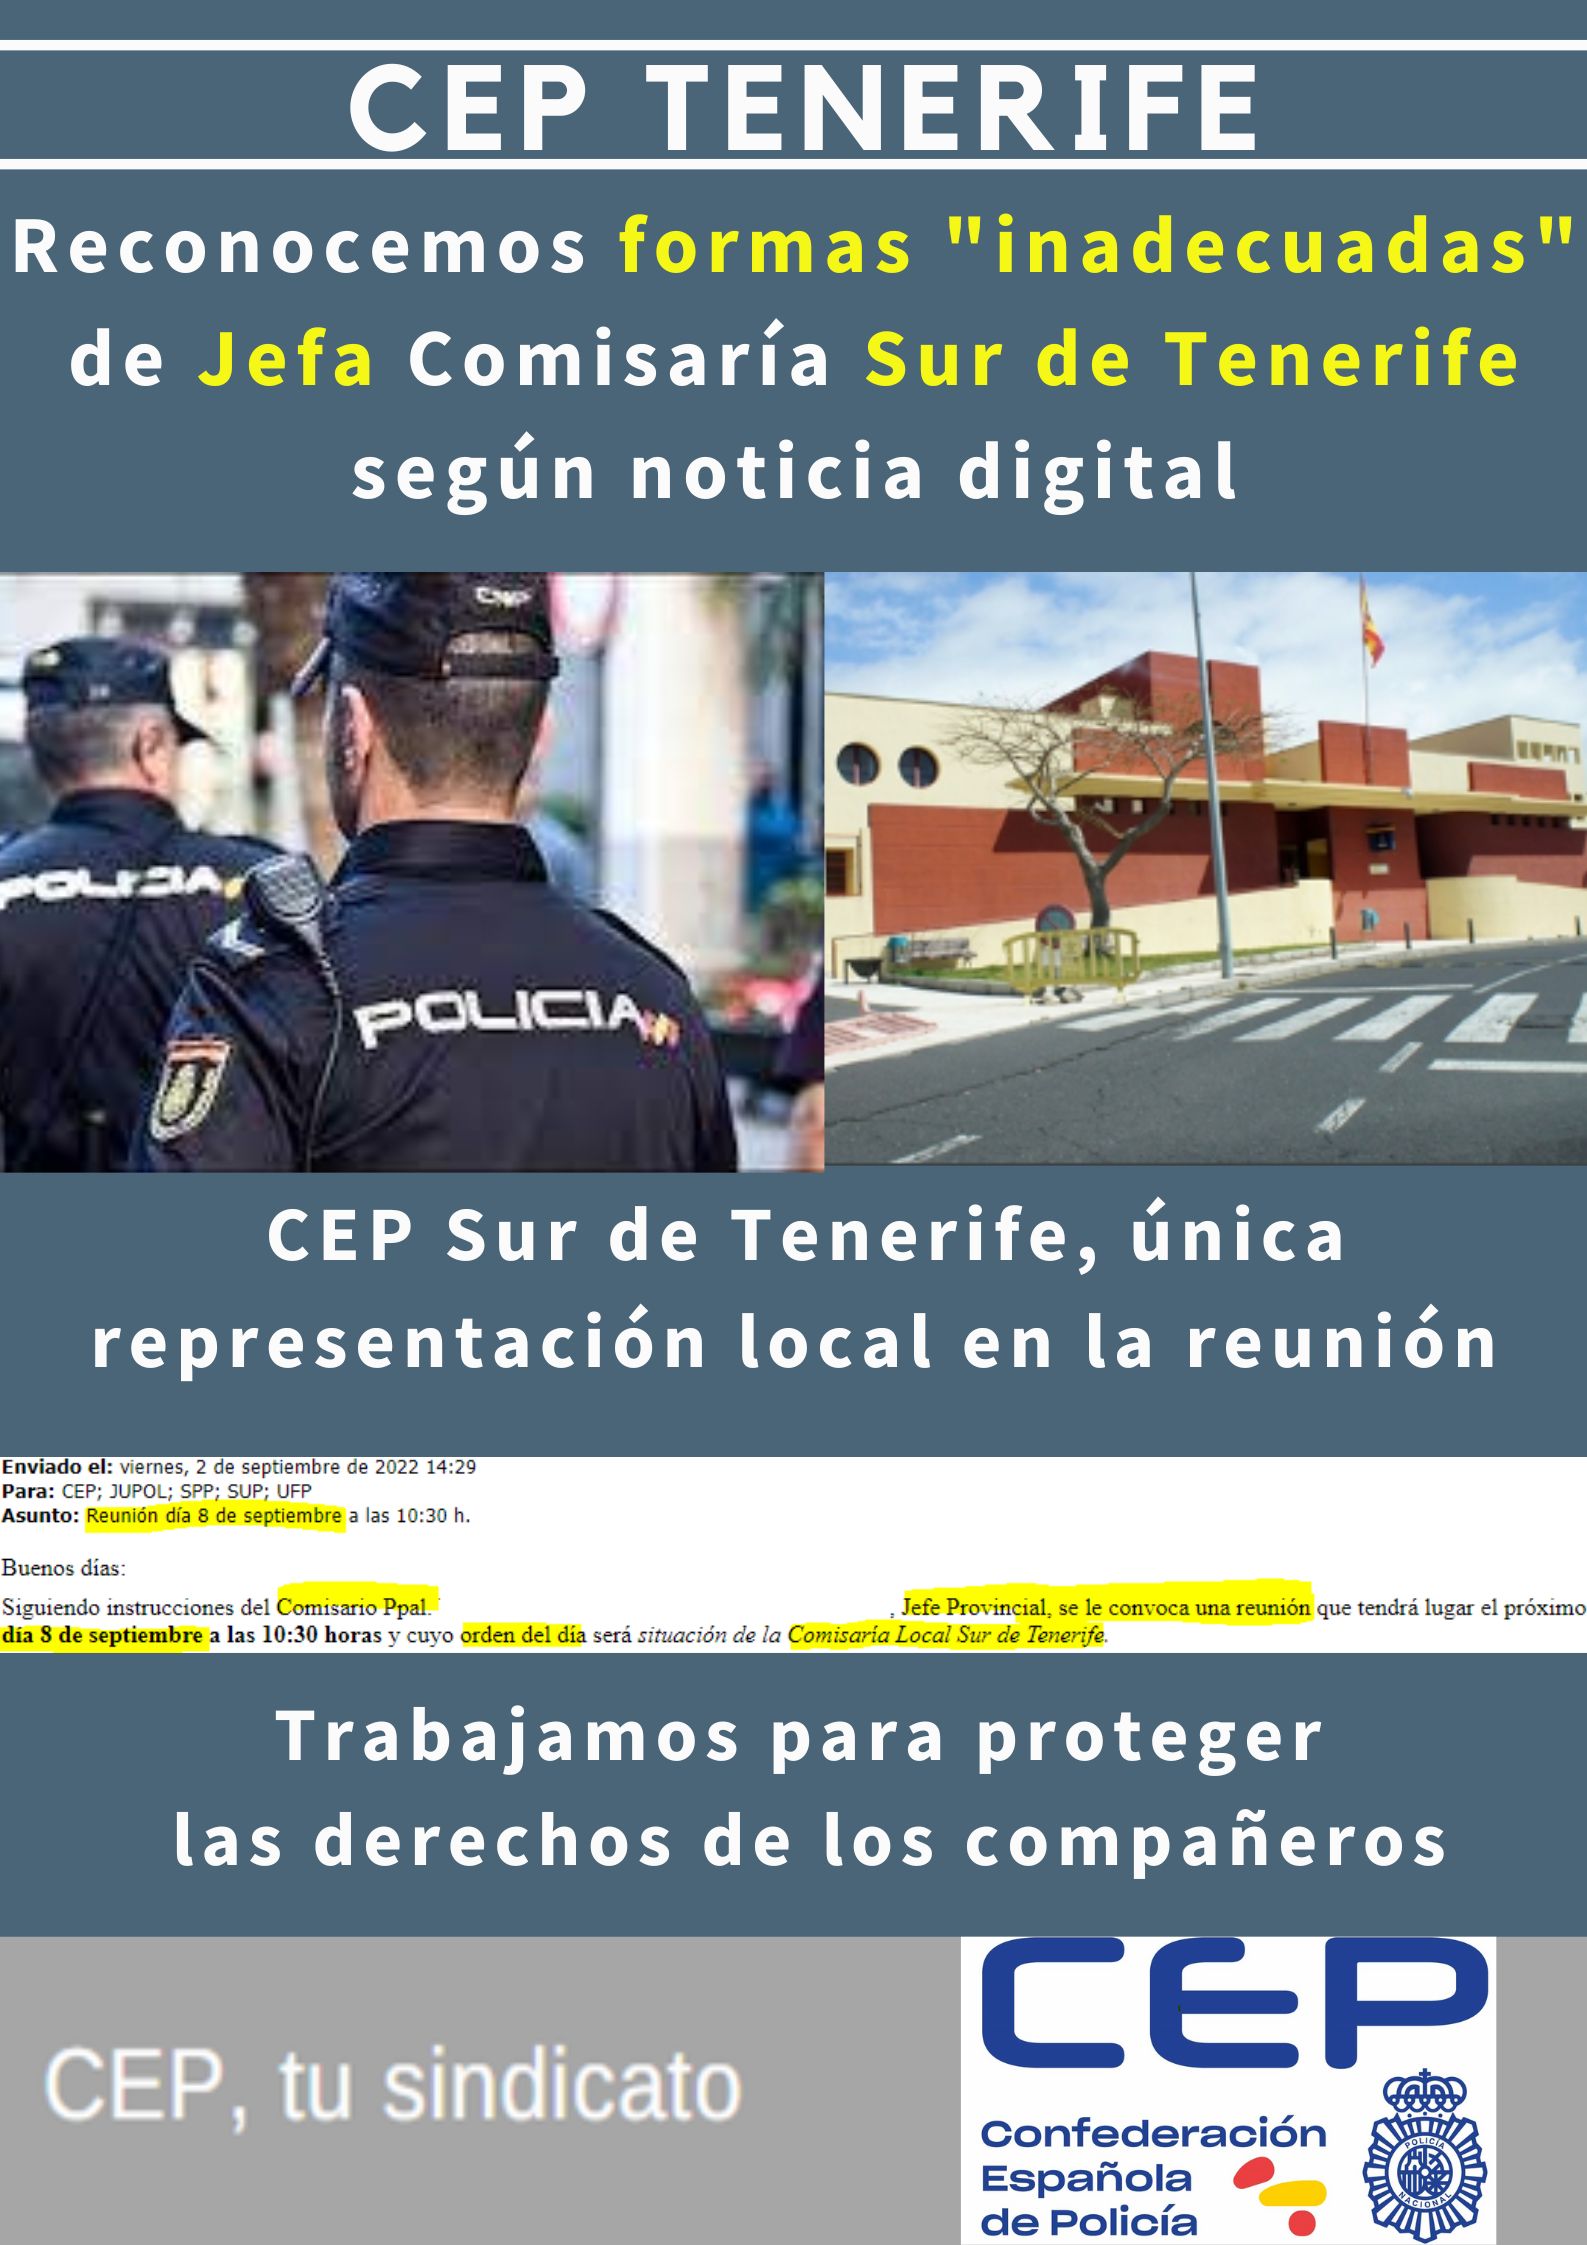 Reconocemos formas inadecuadas Jefa Comisaría Sur de Tenerife